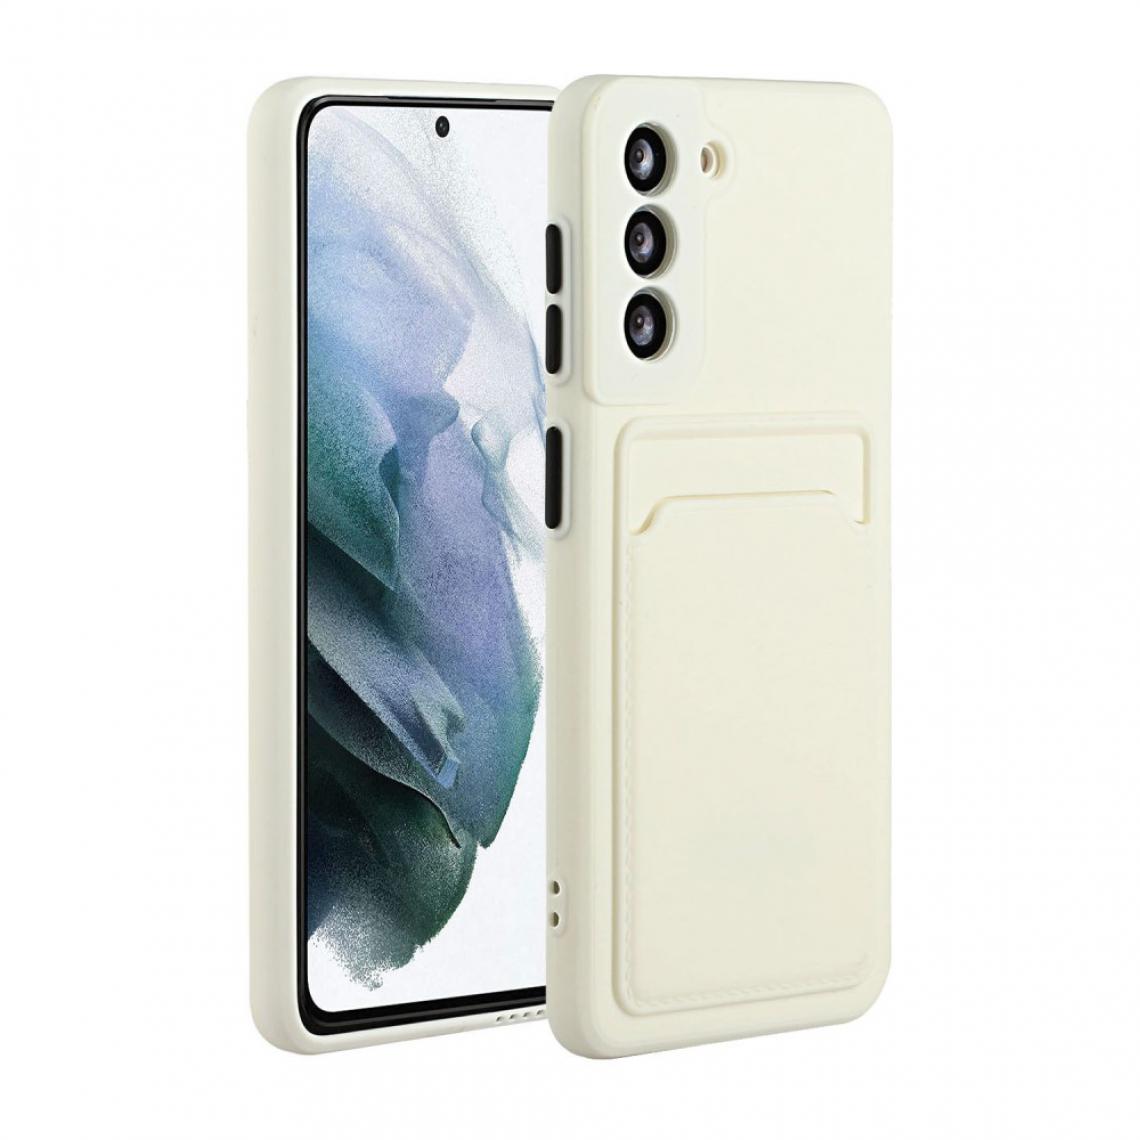 Other - Coque en TPU souple avec porte-carte blanc pour votre Samsung Galaxy S21 5G - Coque, étui smartphone